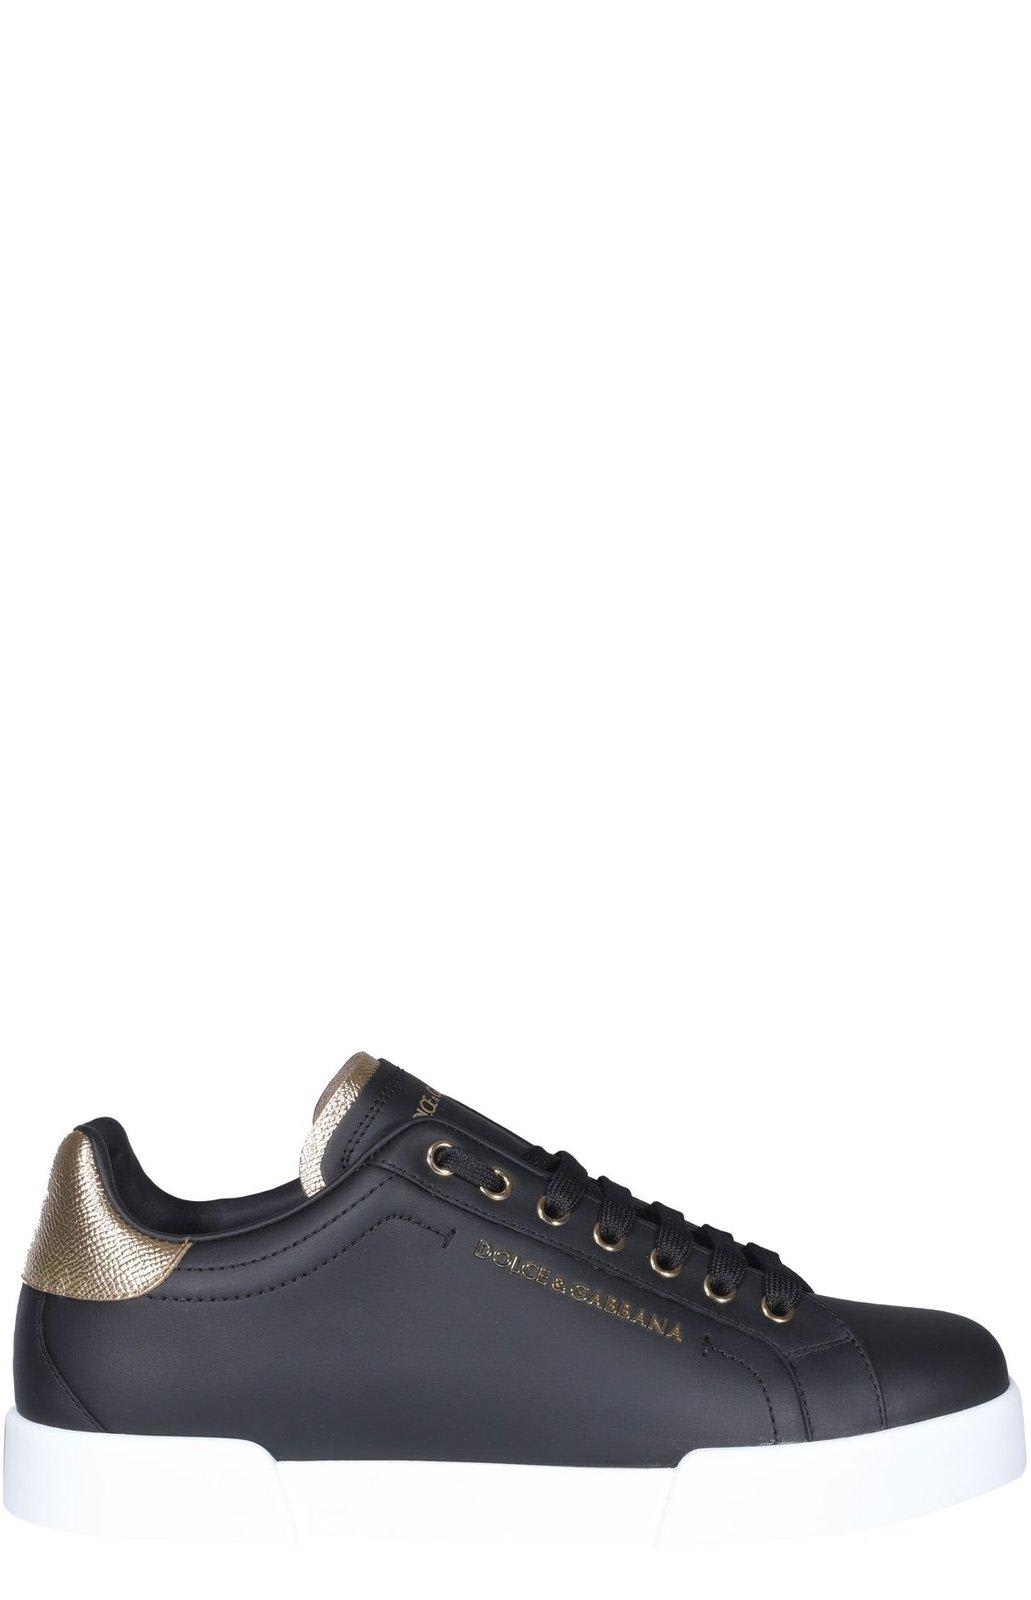 Dolce & Gabbana Portofino Sneakers In Black